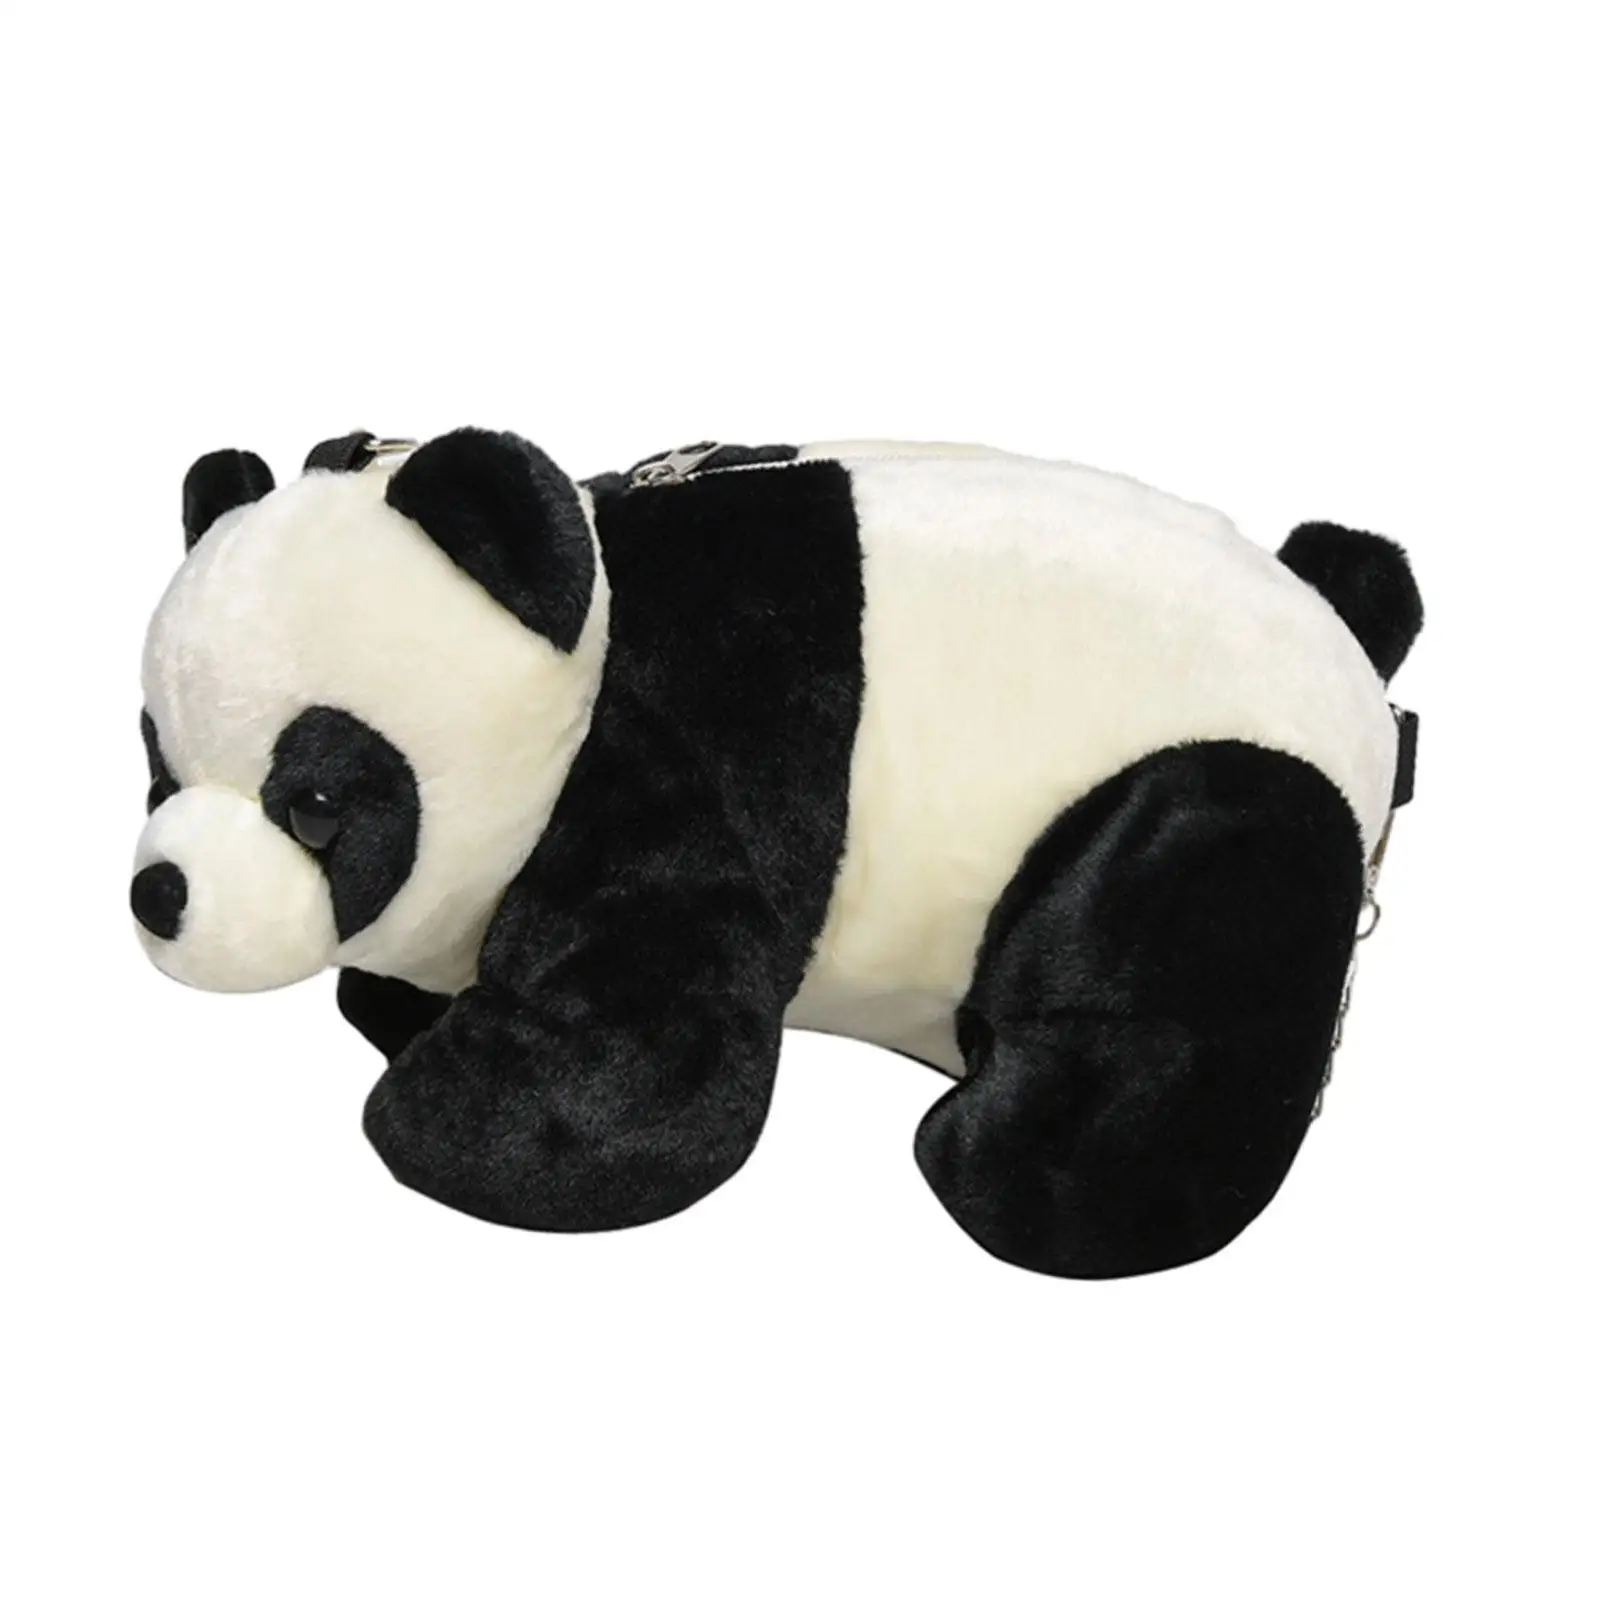 Panda Crossbody Sacos Senhora Adorável Animal De Pelúcia Sacola Saco De Viagem Lolita Acessórios Bolsa Bolsa De Ombro Das Mulheres Sacola Bolsa Imagem 3